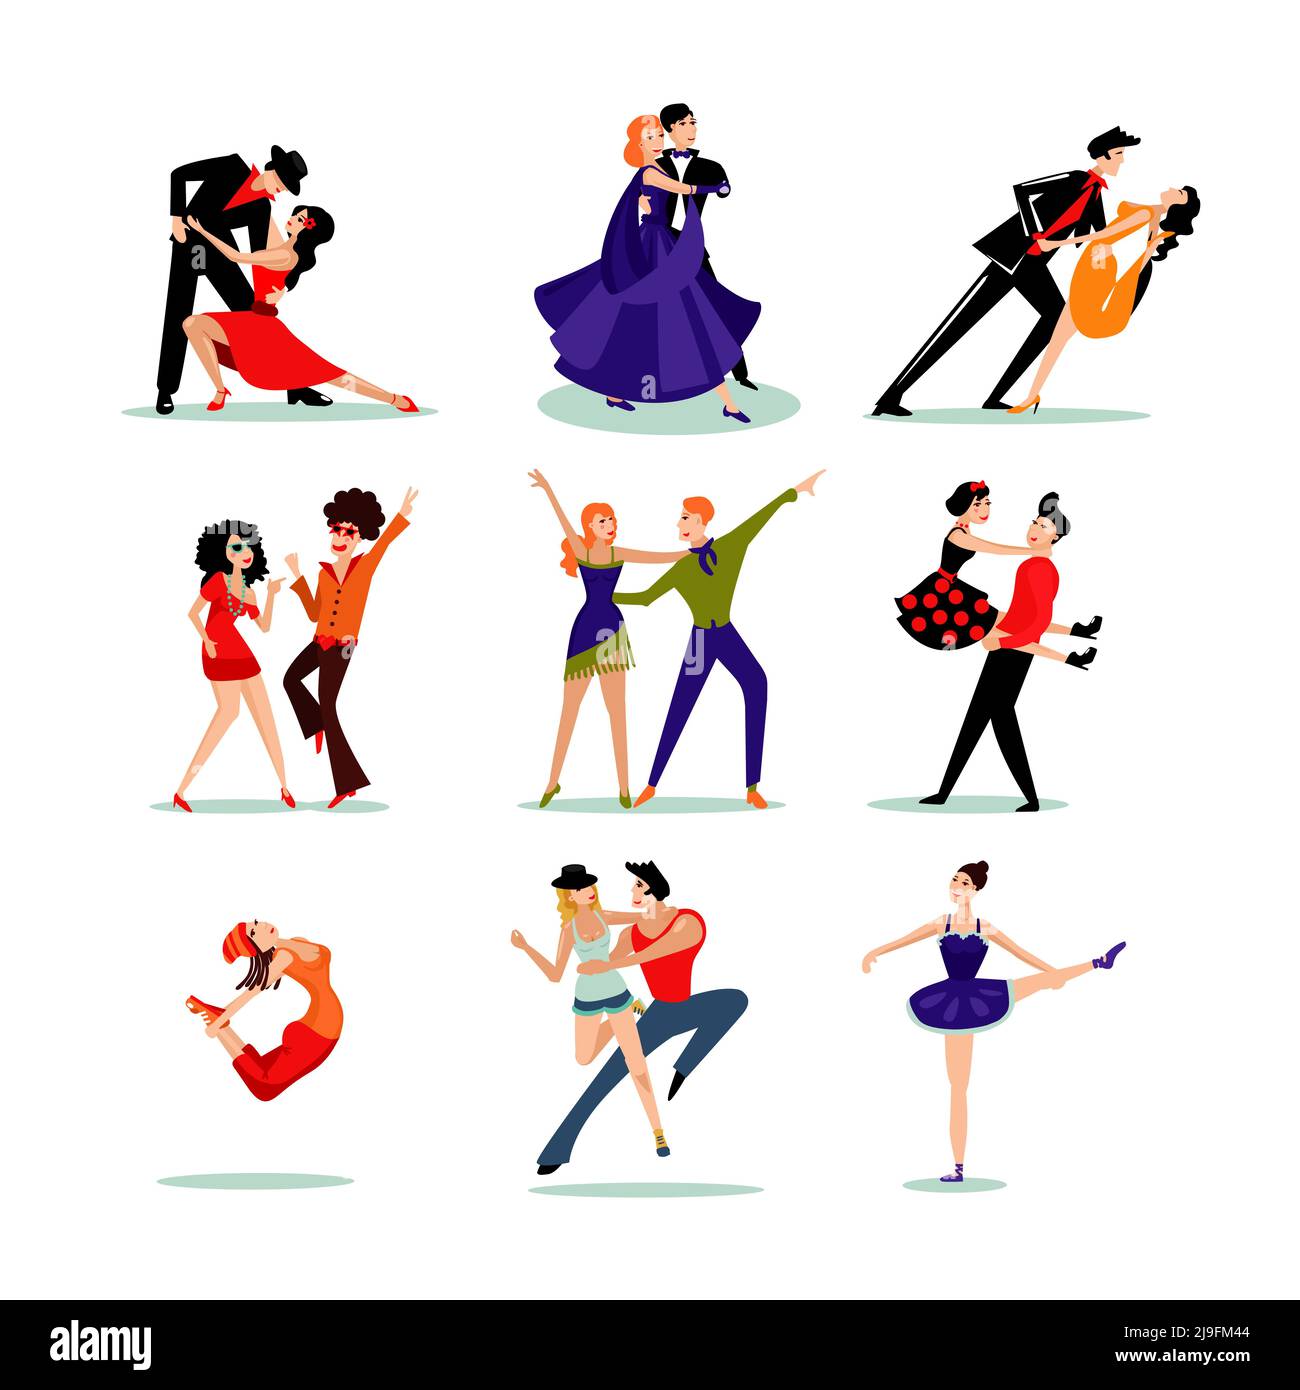 Dancing de personnes ensemble dans différents vêtements et différents styles de danse illustration vectorielle isolée Illustration de Vecteur